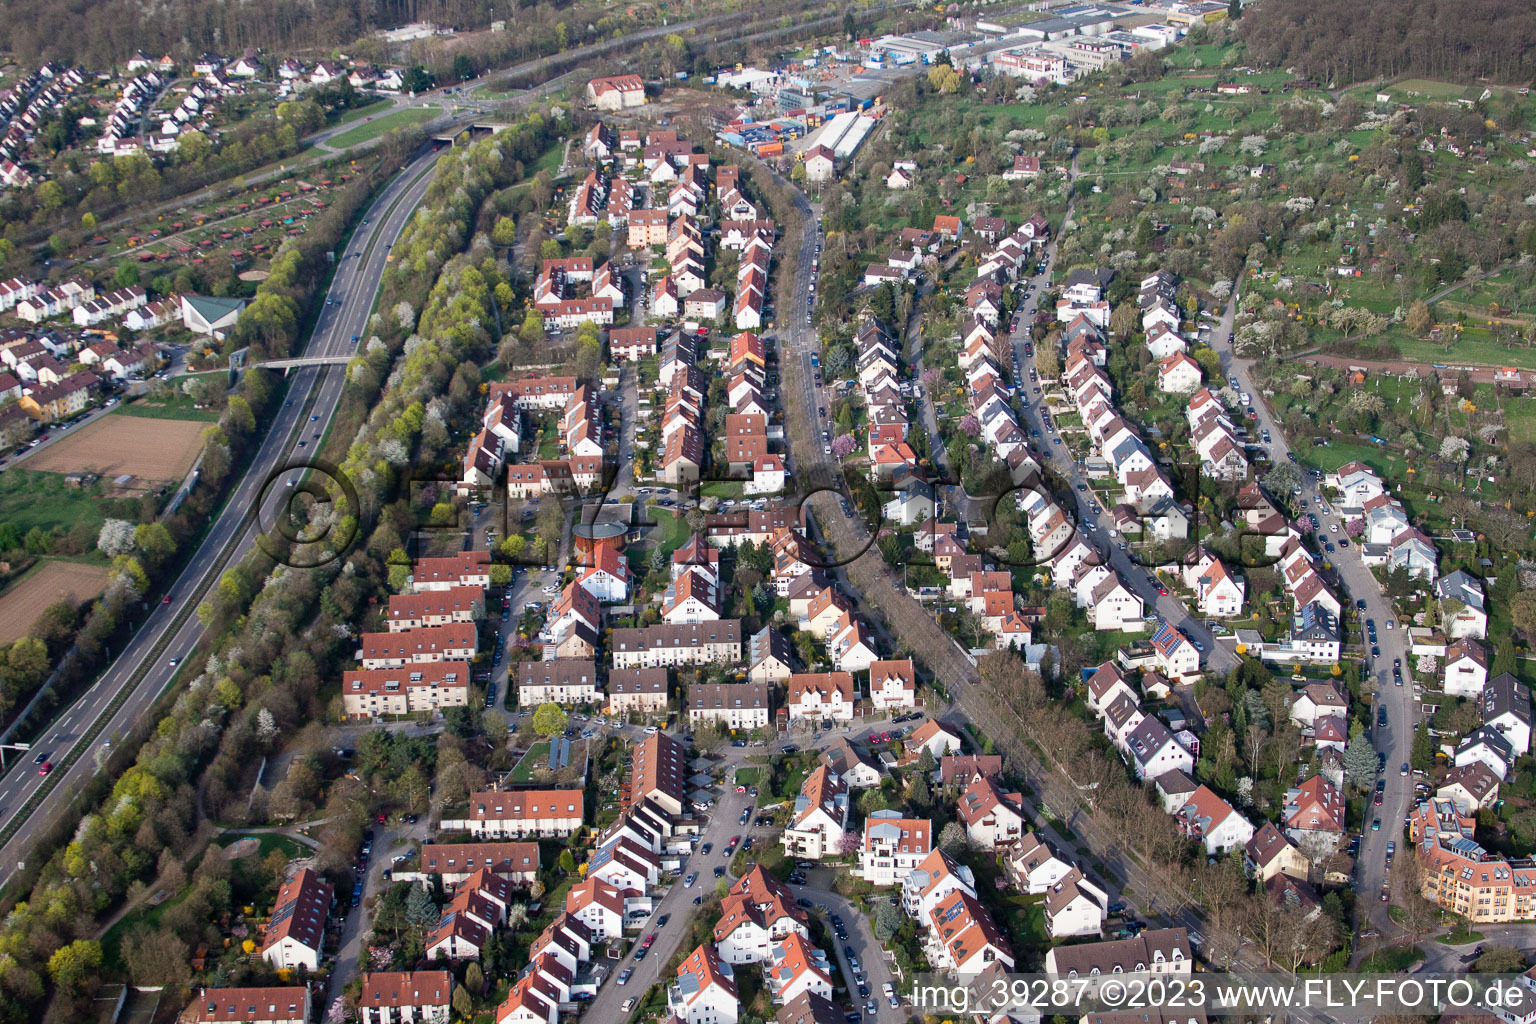 Luftbild von Ortsteil Stammheim in Stuttgart im Bundesland Baden-Württemberg, Deutschland